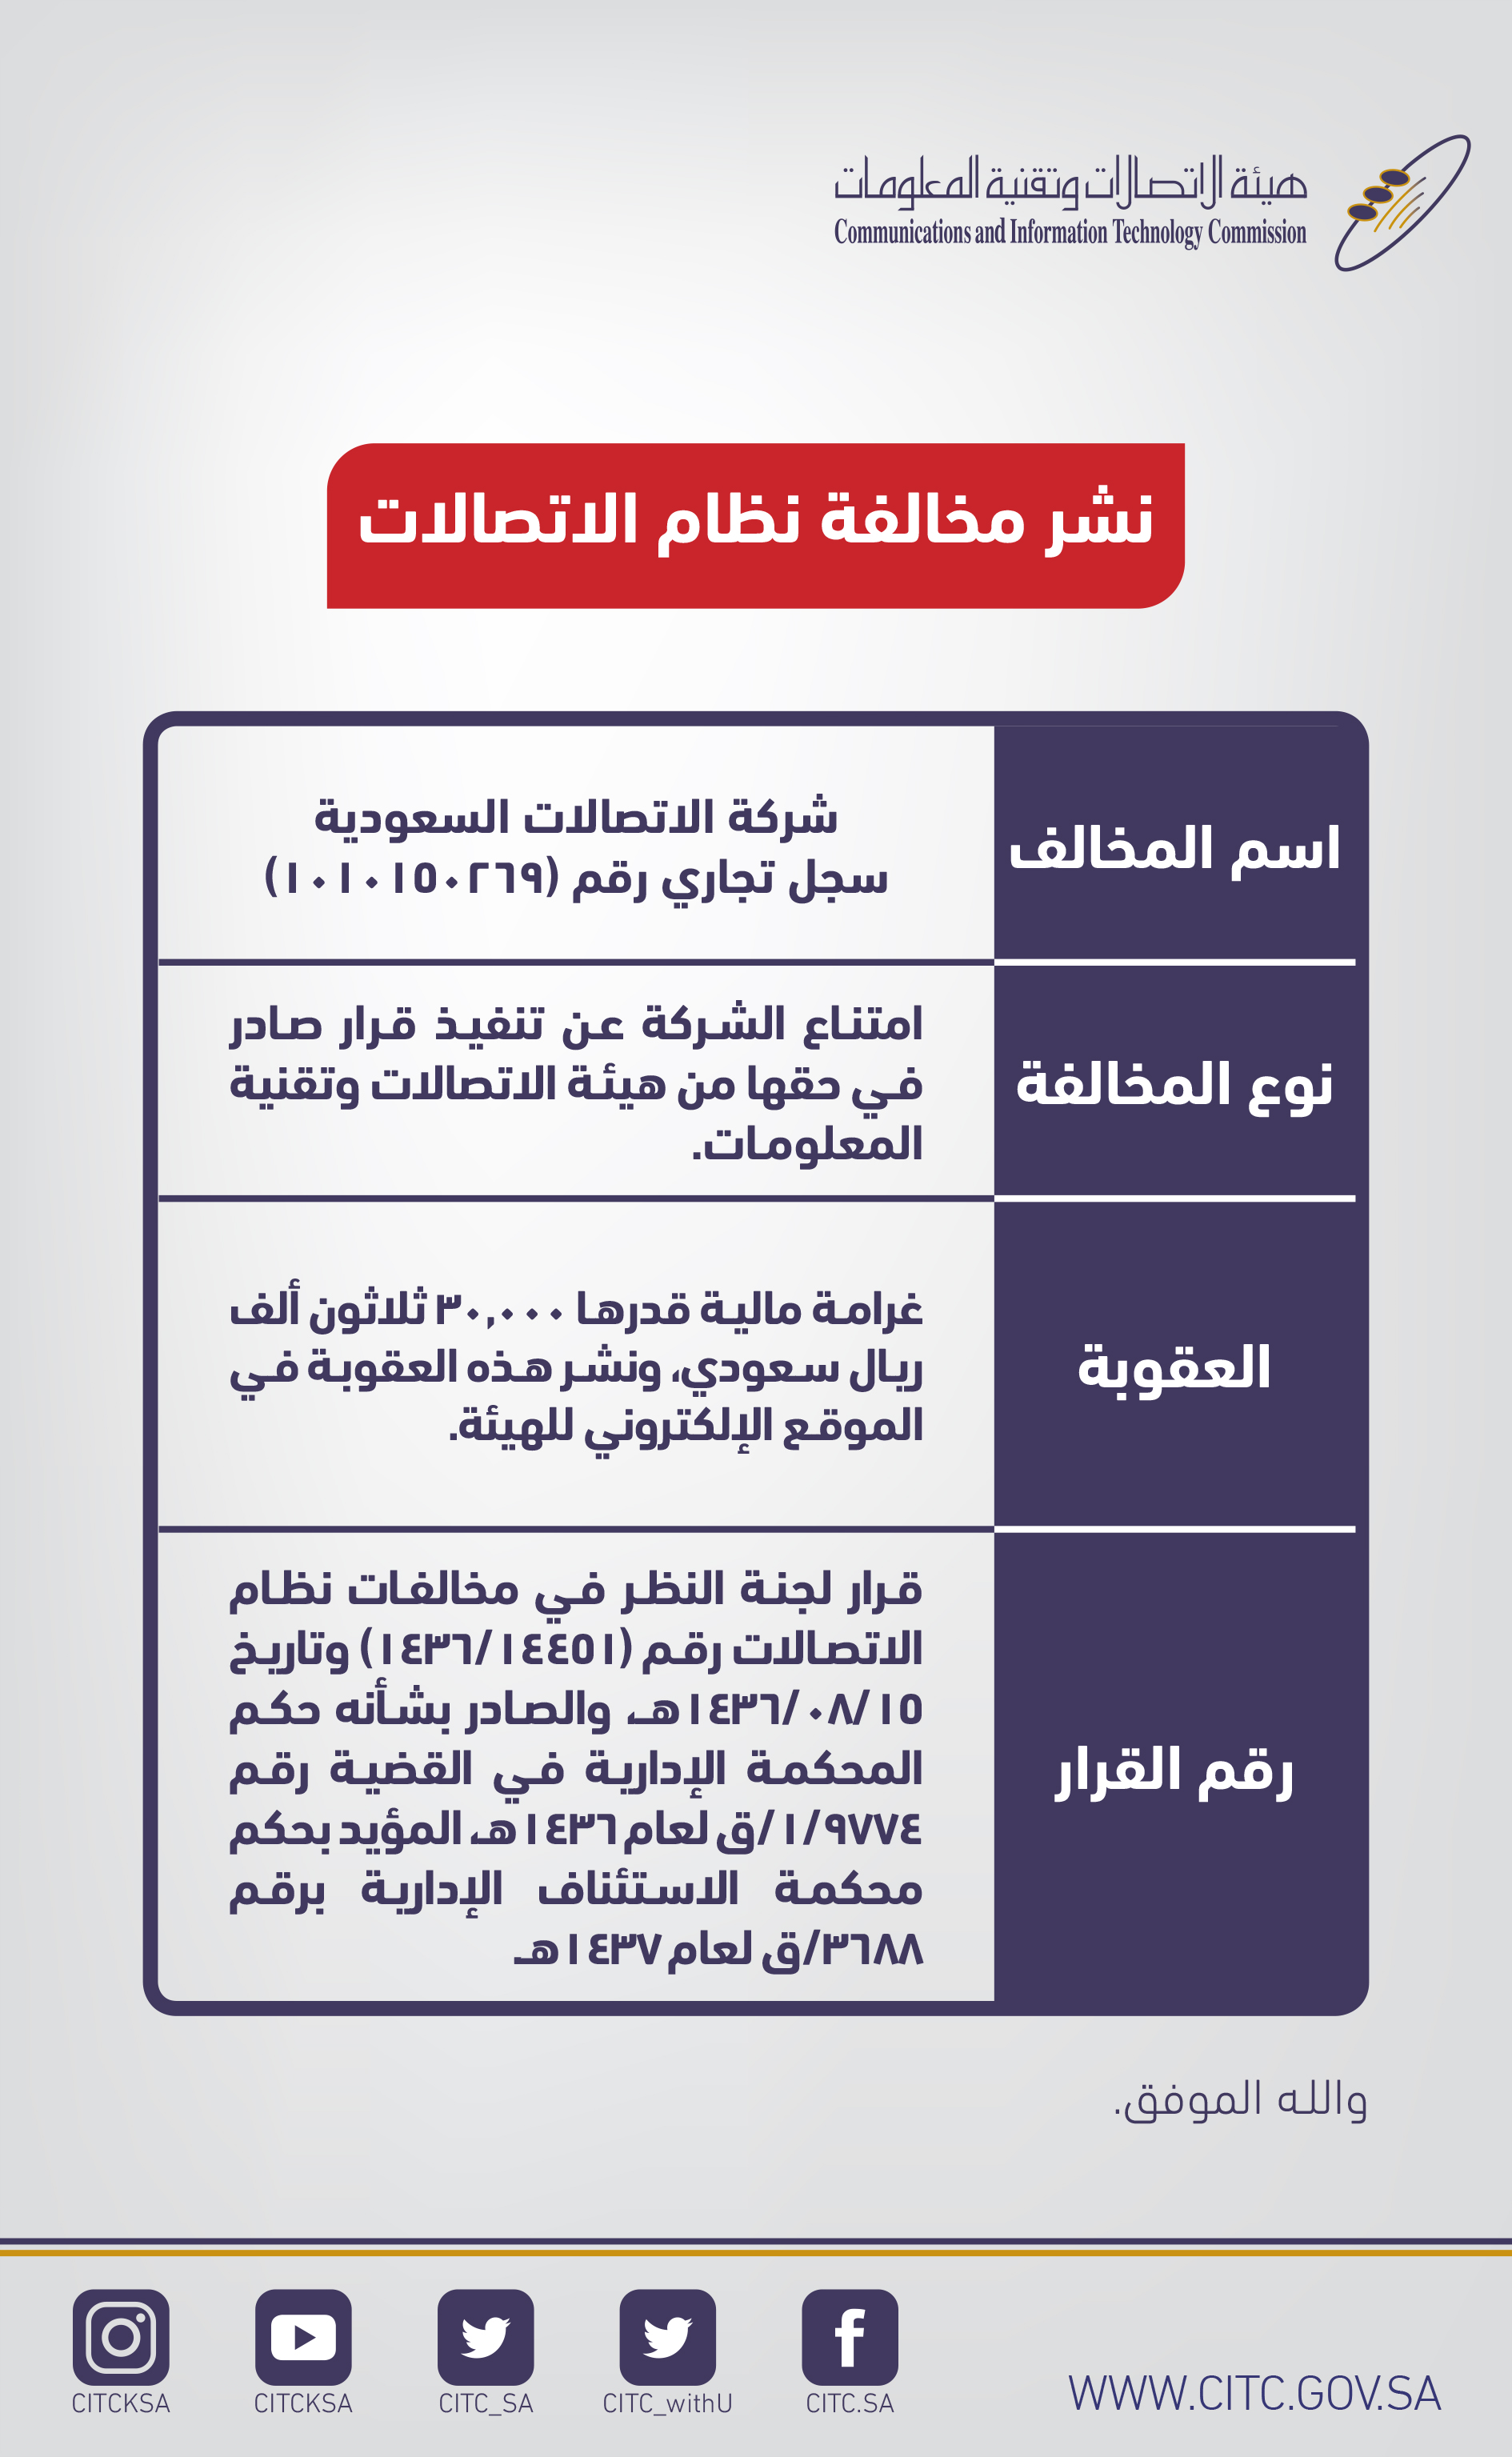 هيئة الاتصالات وتقنية المعلومات السعودية